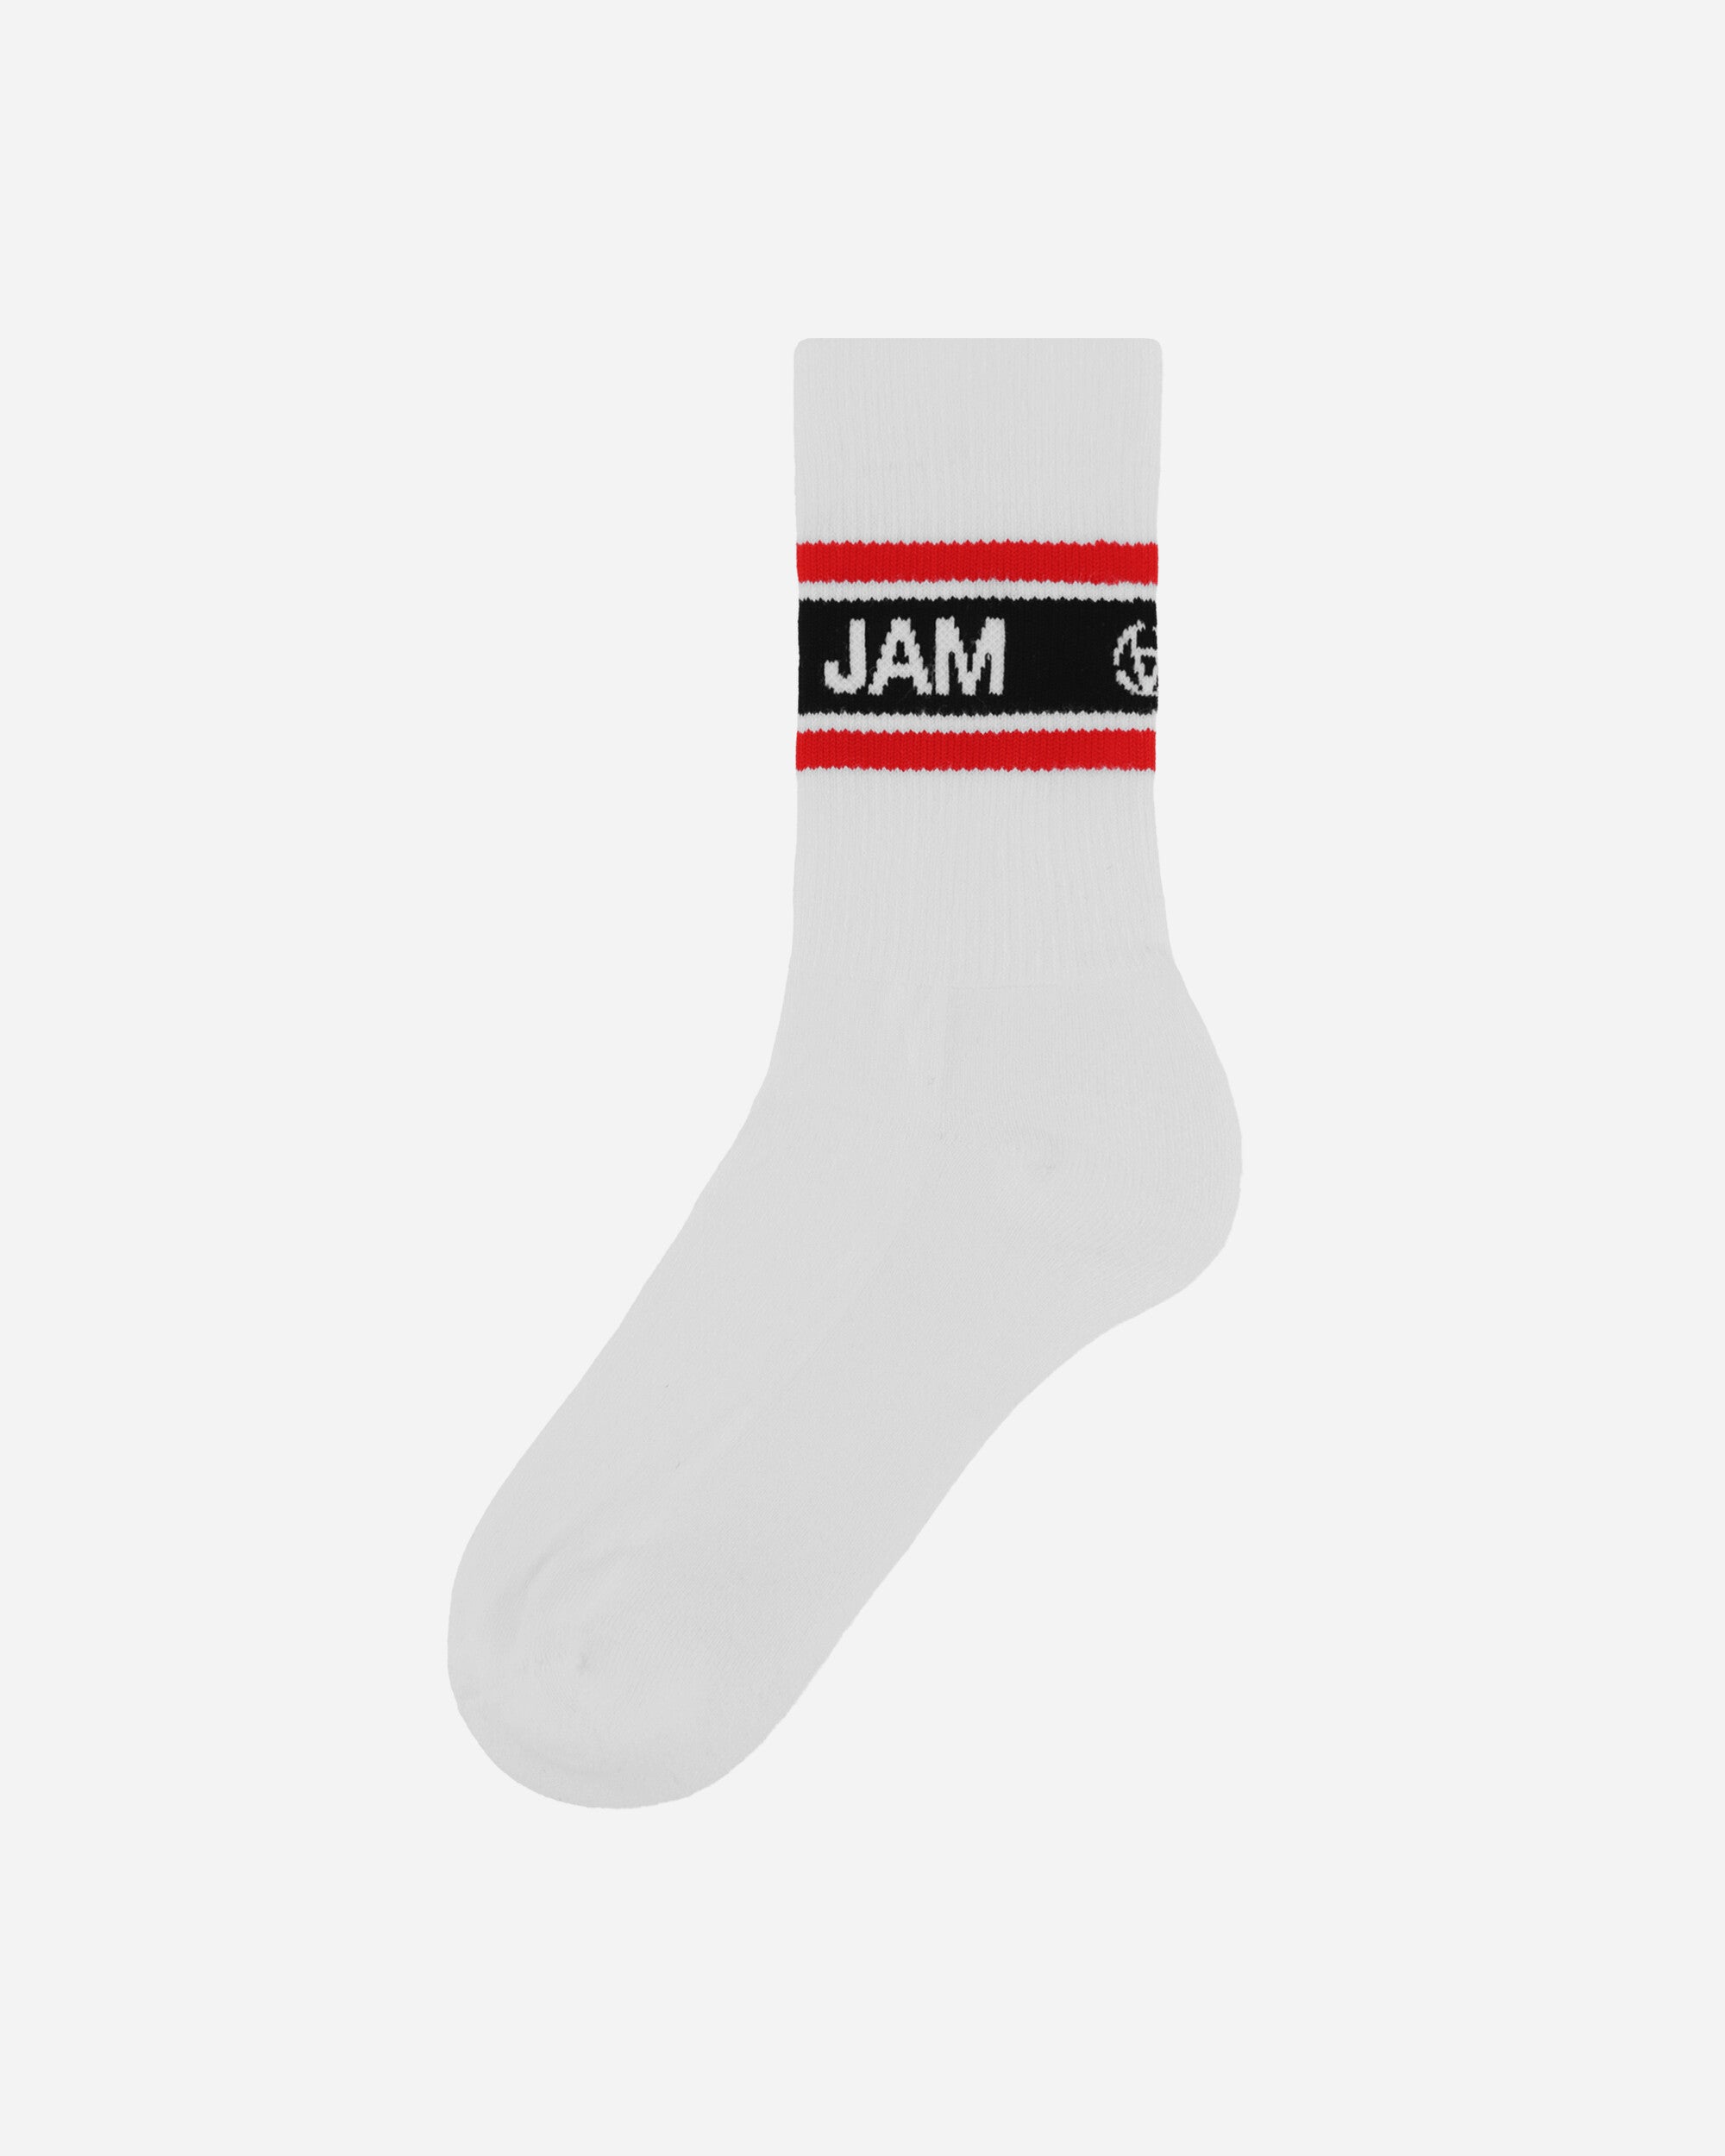 Slam Jam Socks 3 Pack White Underwear Socks SBMW006FA03 WHT0001